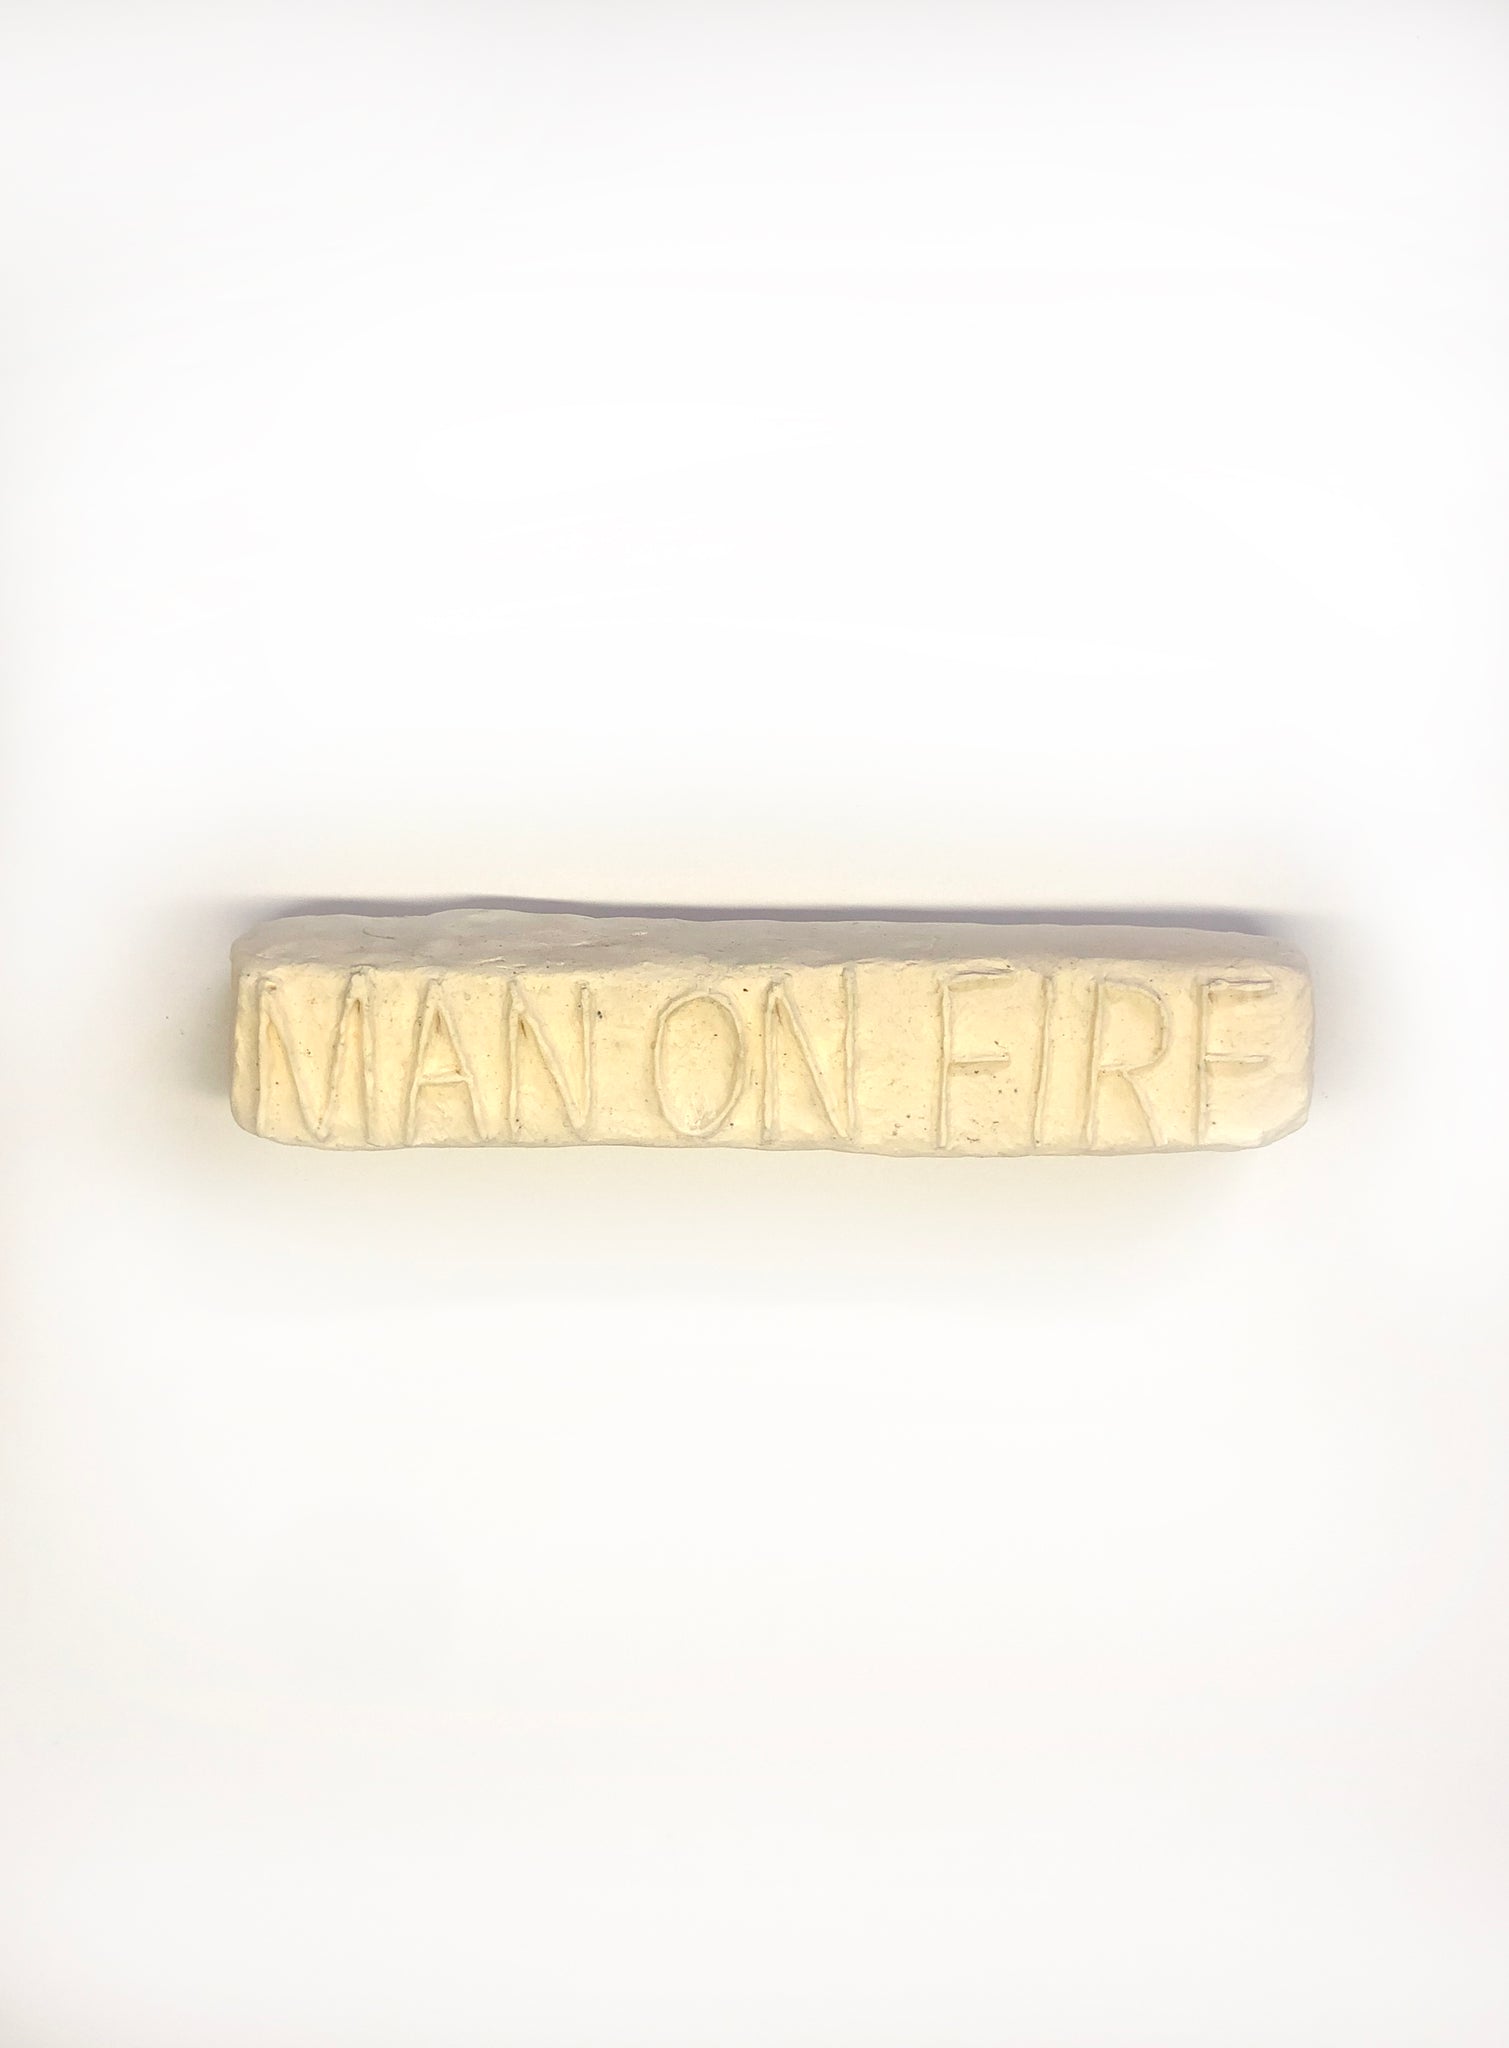 Corey Escoto, "Man on Fire"